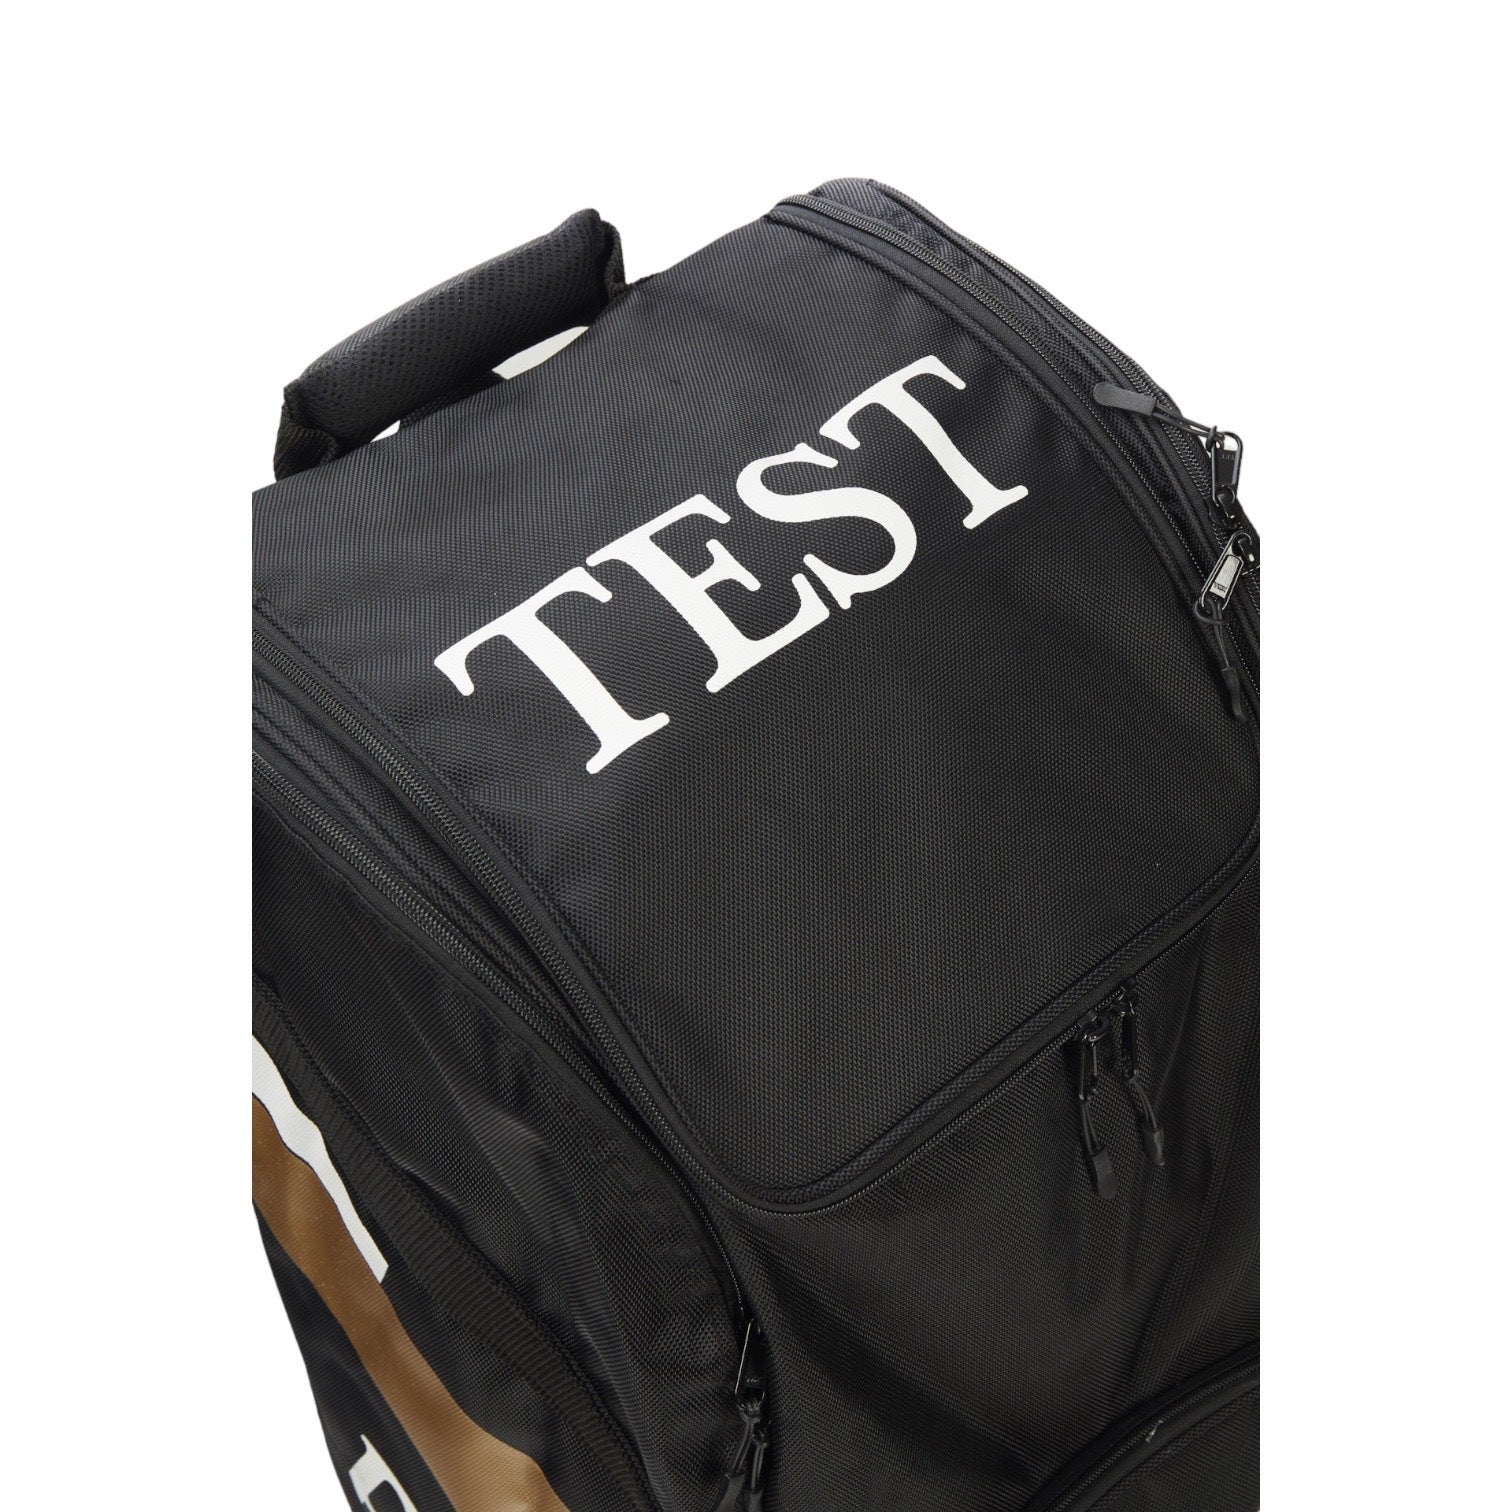 Robert Pack Cricket Test Wheelie Duffle Bag